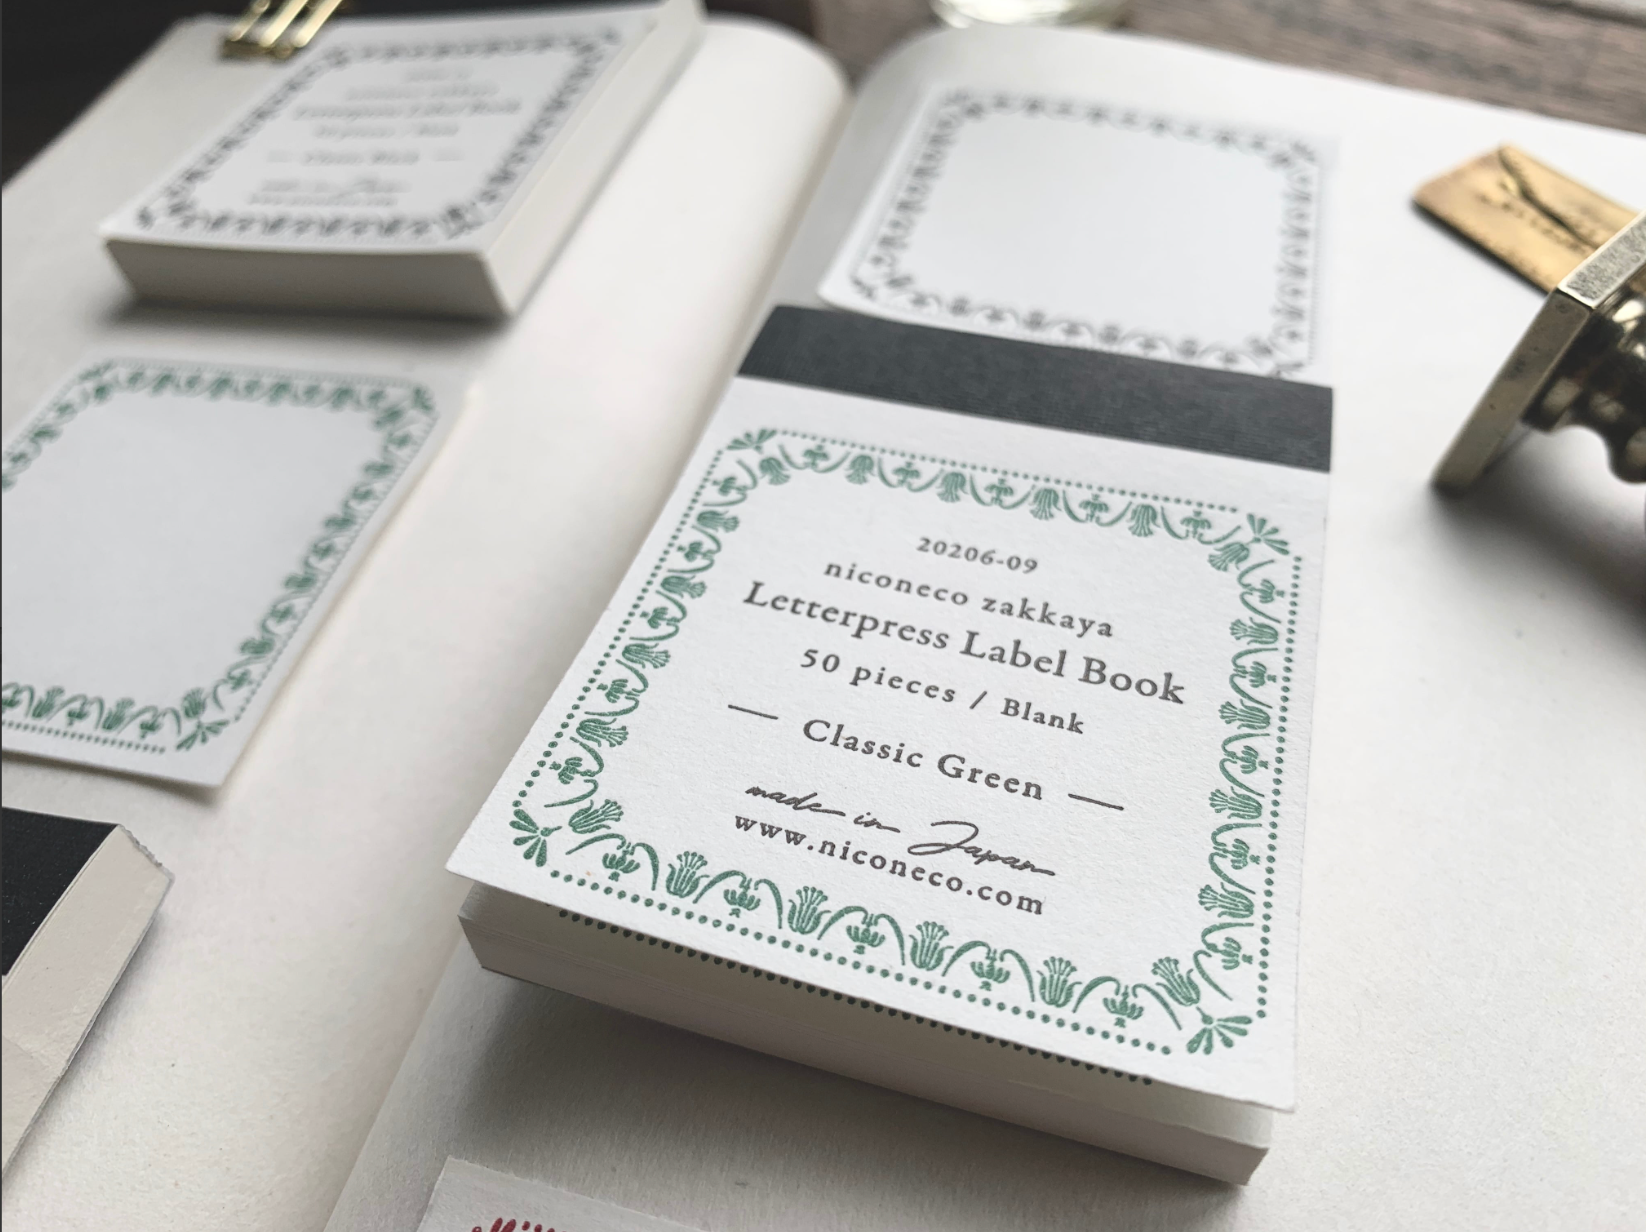 [Letterpress printing] Label book Vol.2 (Classic green) niconeco collaboration